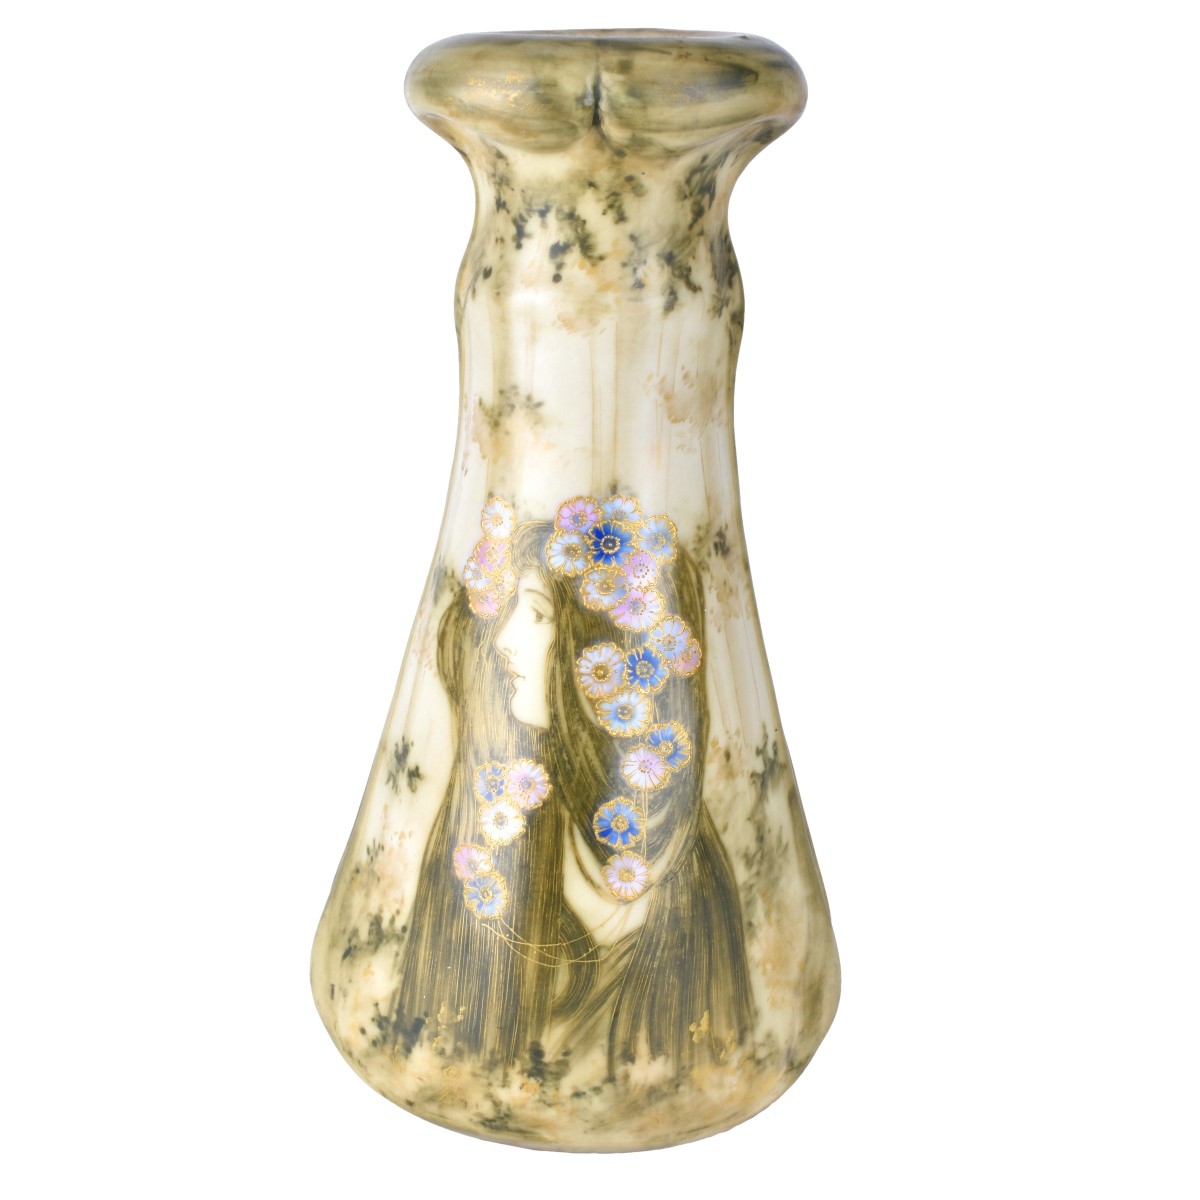 Amphora Art Nouveau Portrait Vase by Paul Dachsel